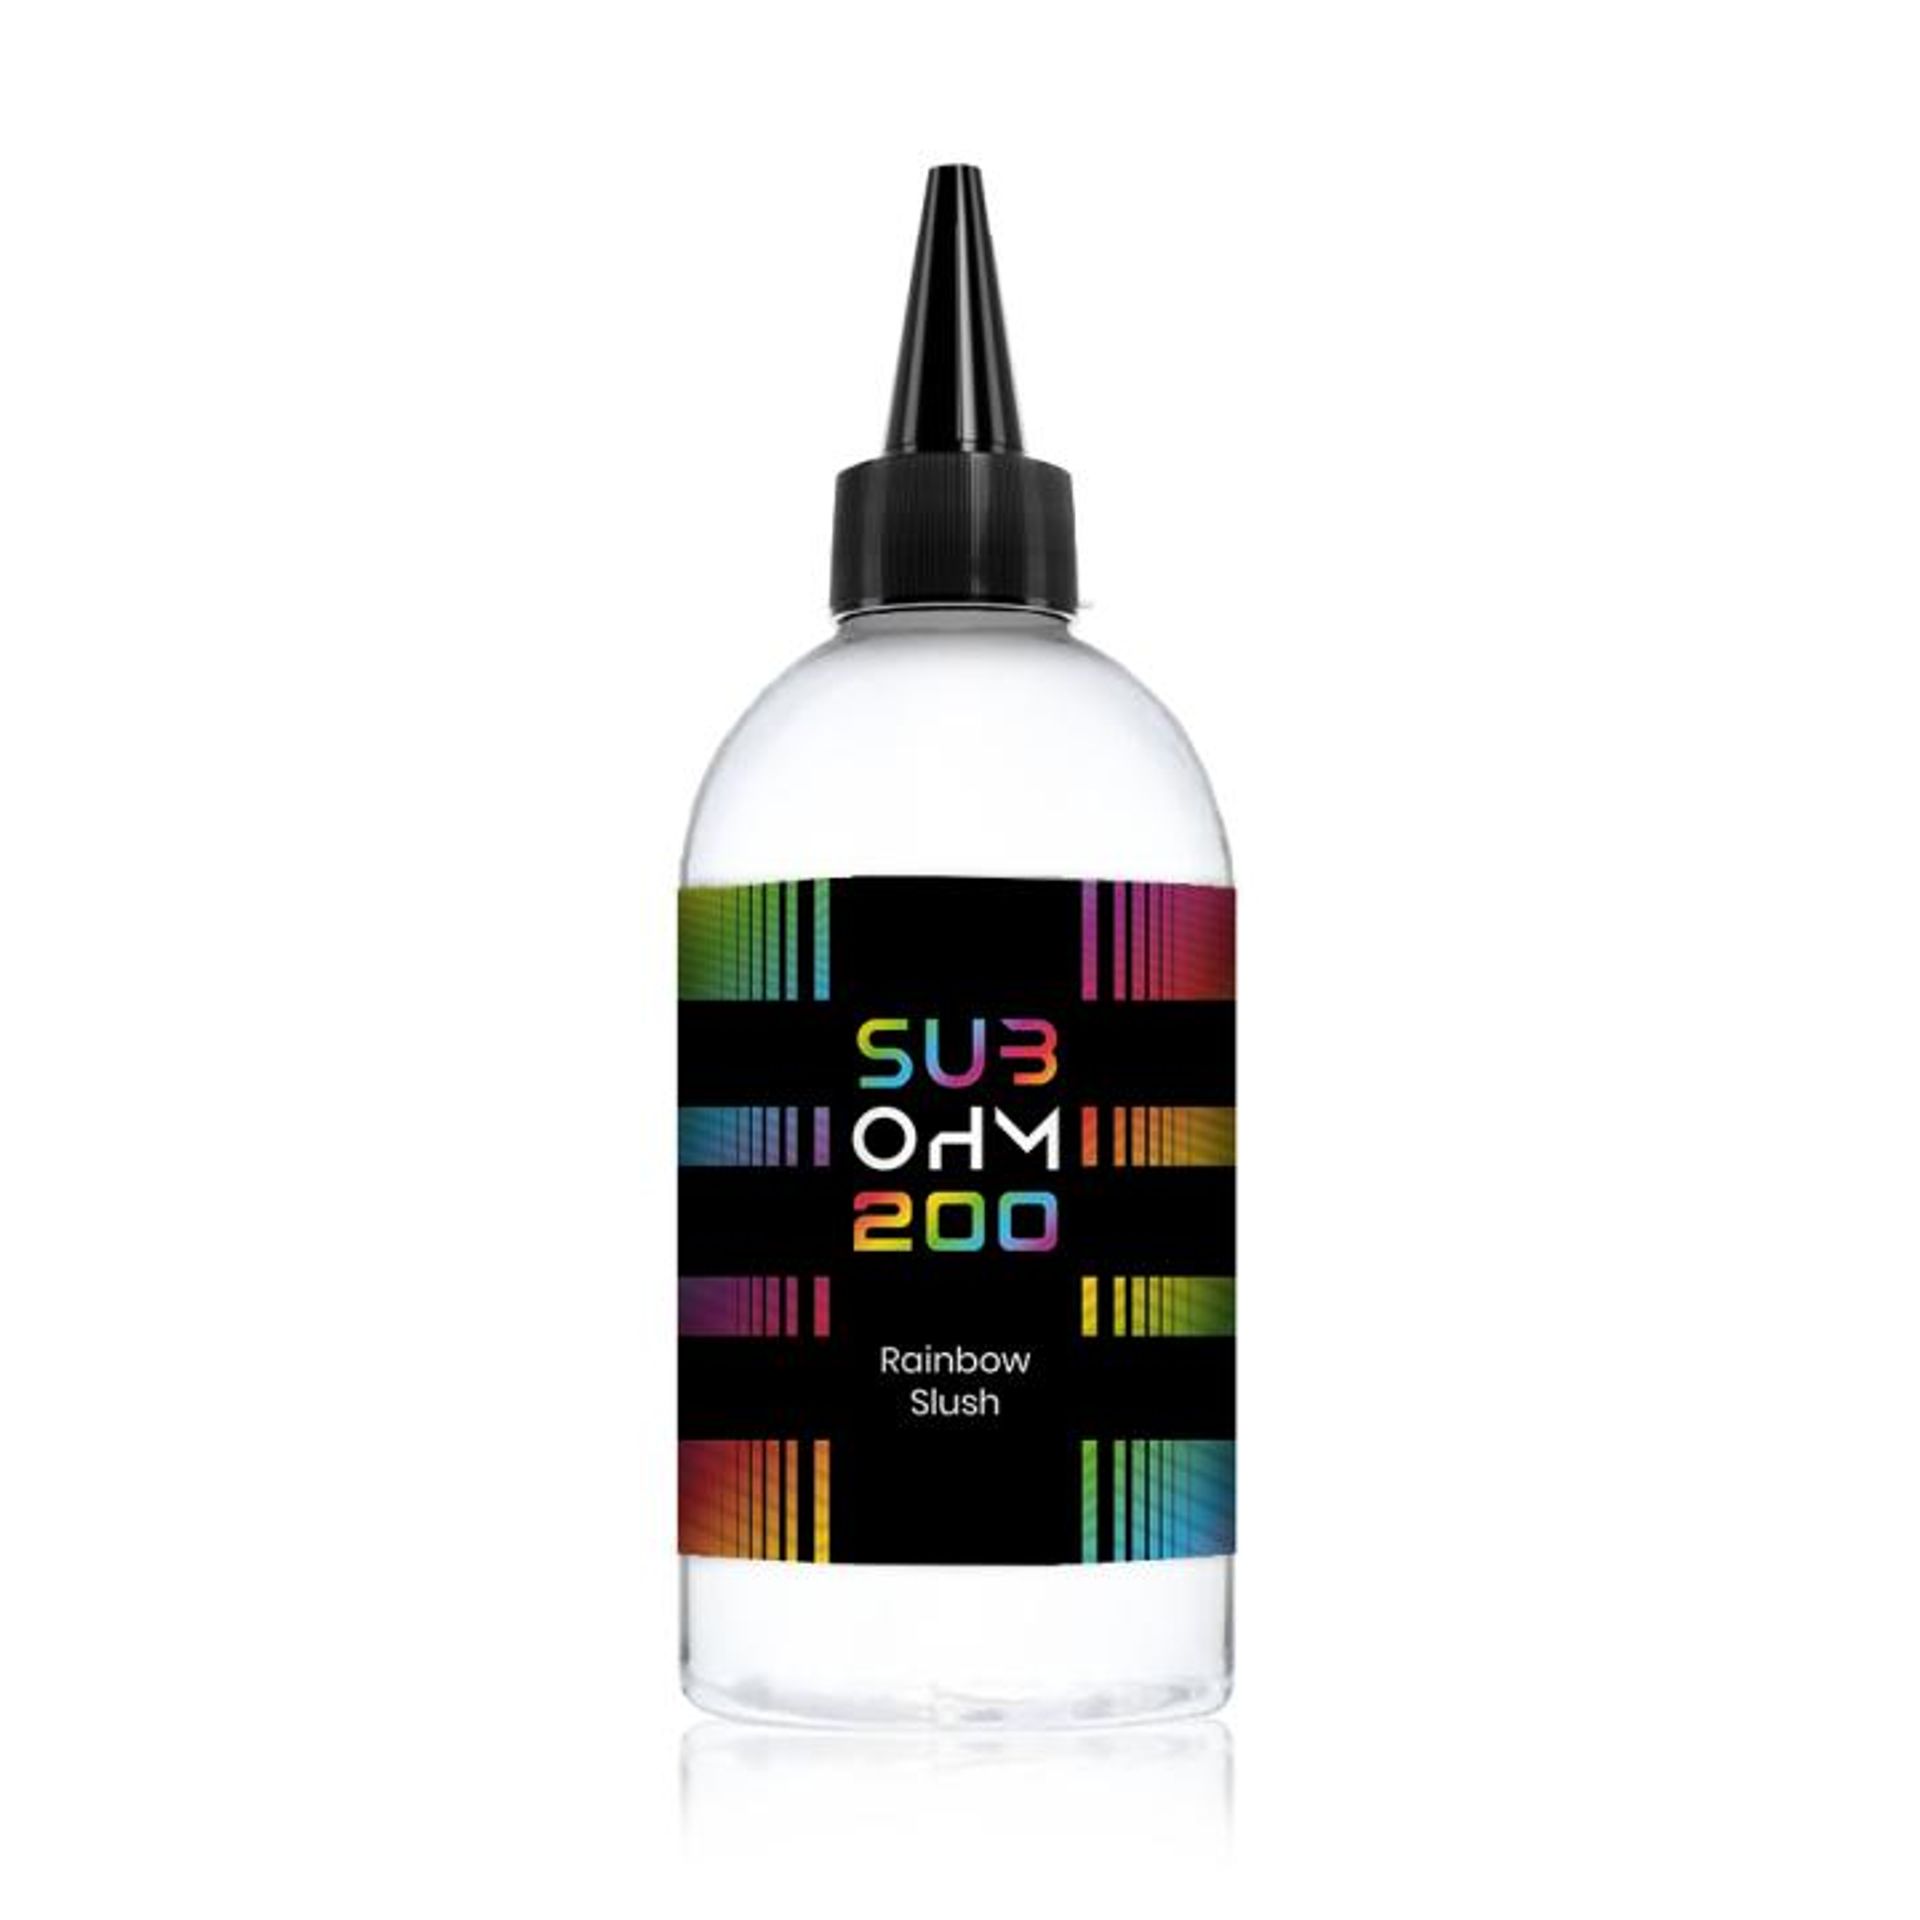 Image of Rainbow Slush by Sub Ohm 200